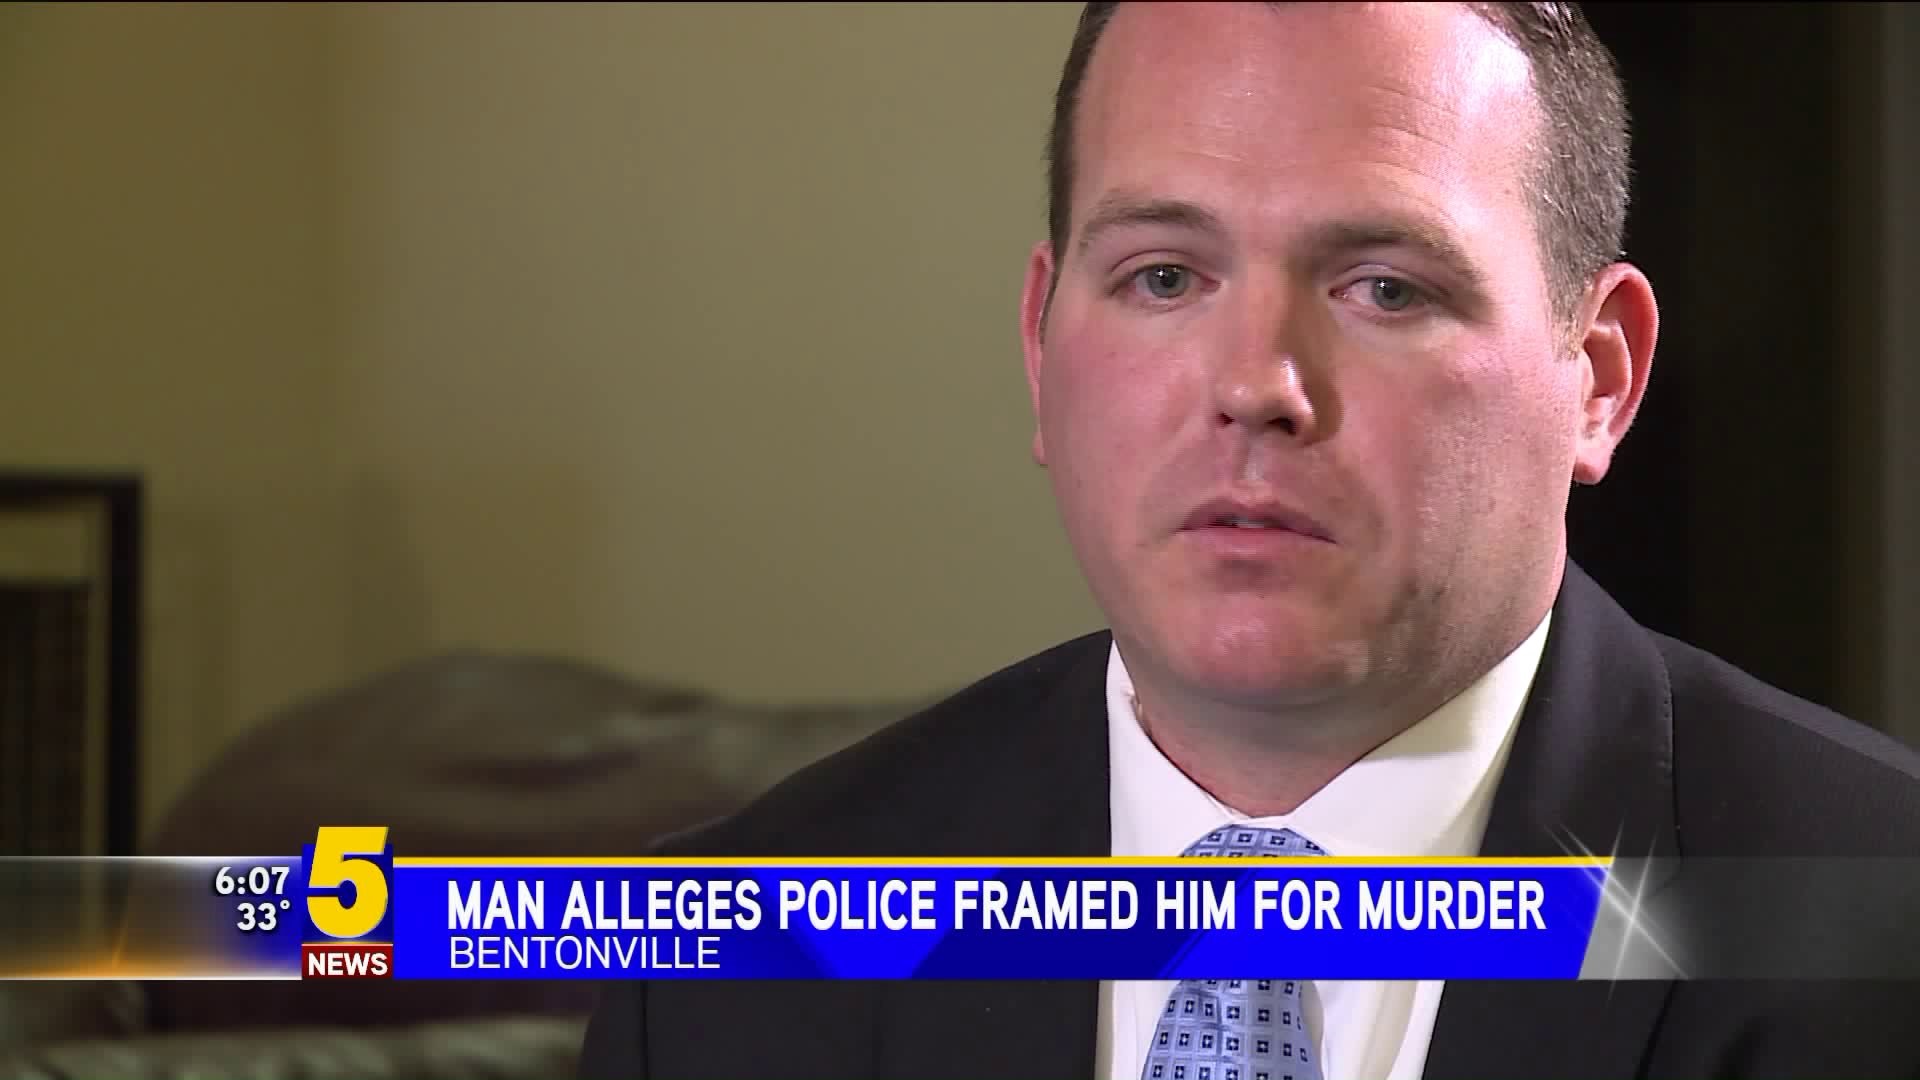 Man Alleges Bentonville Police Framed Him For Murder